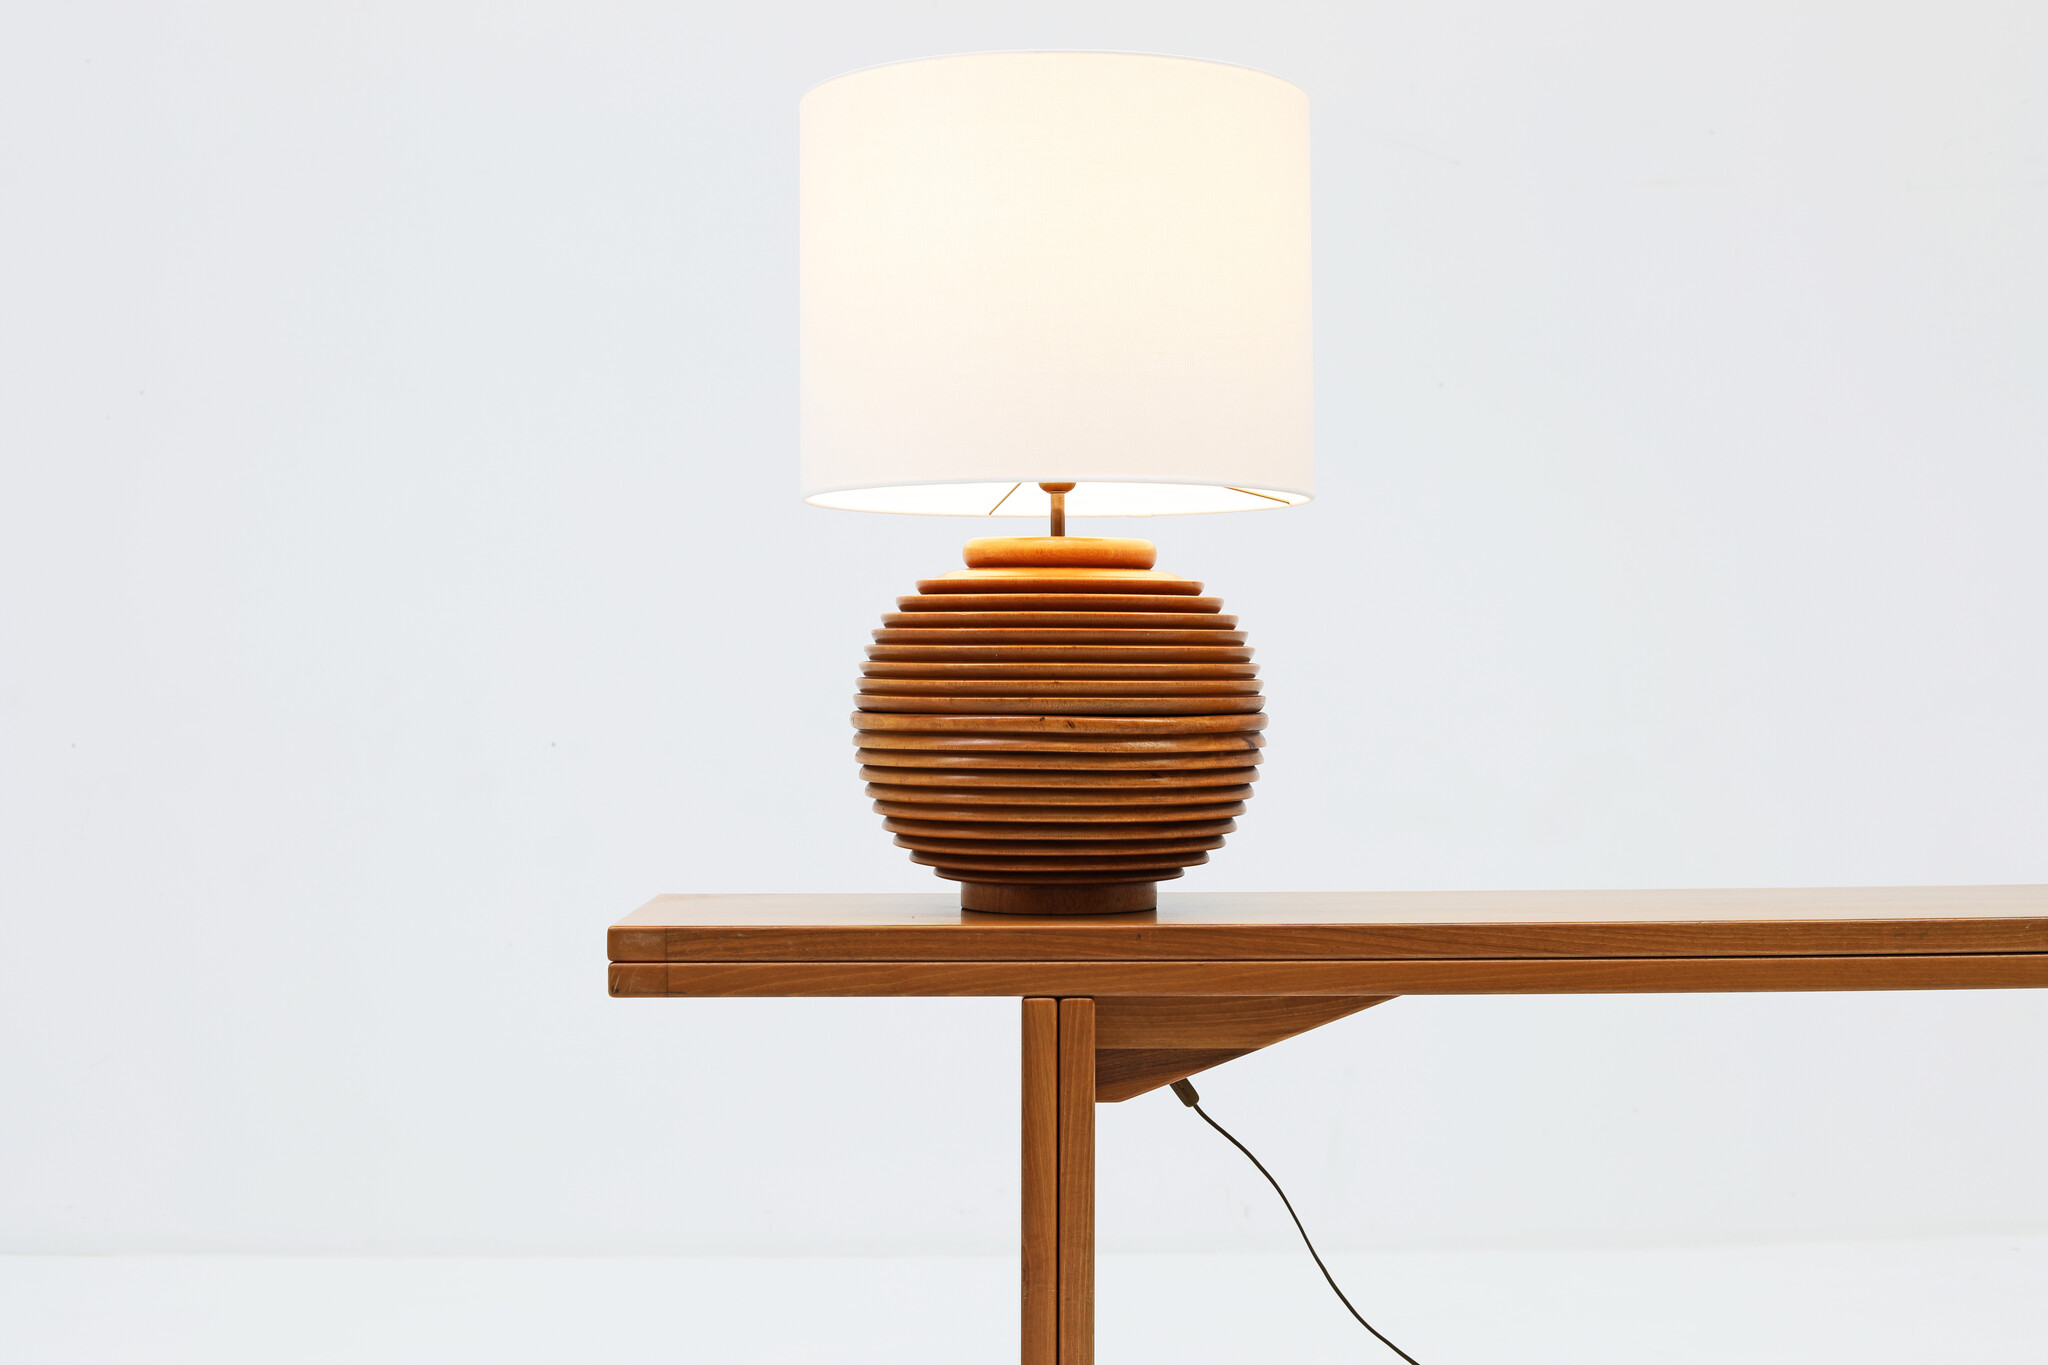 Unique wooden table lamps